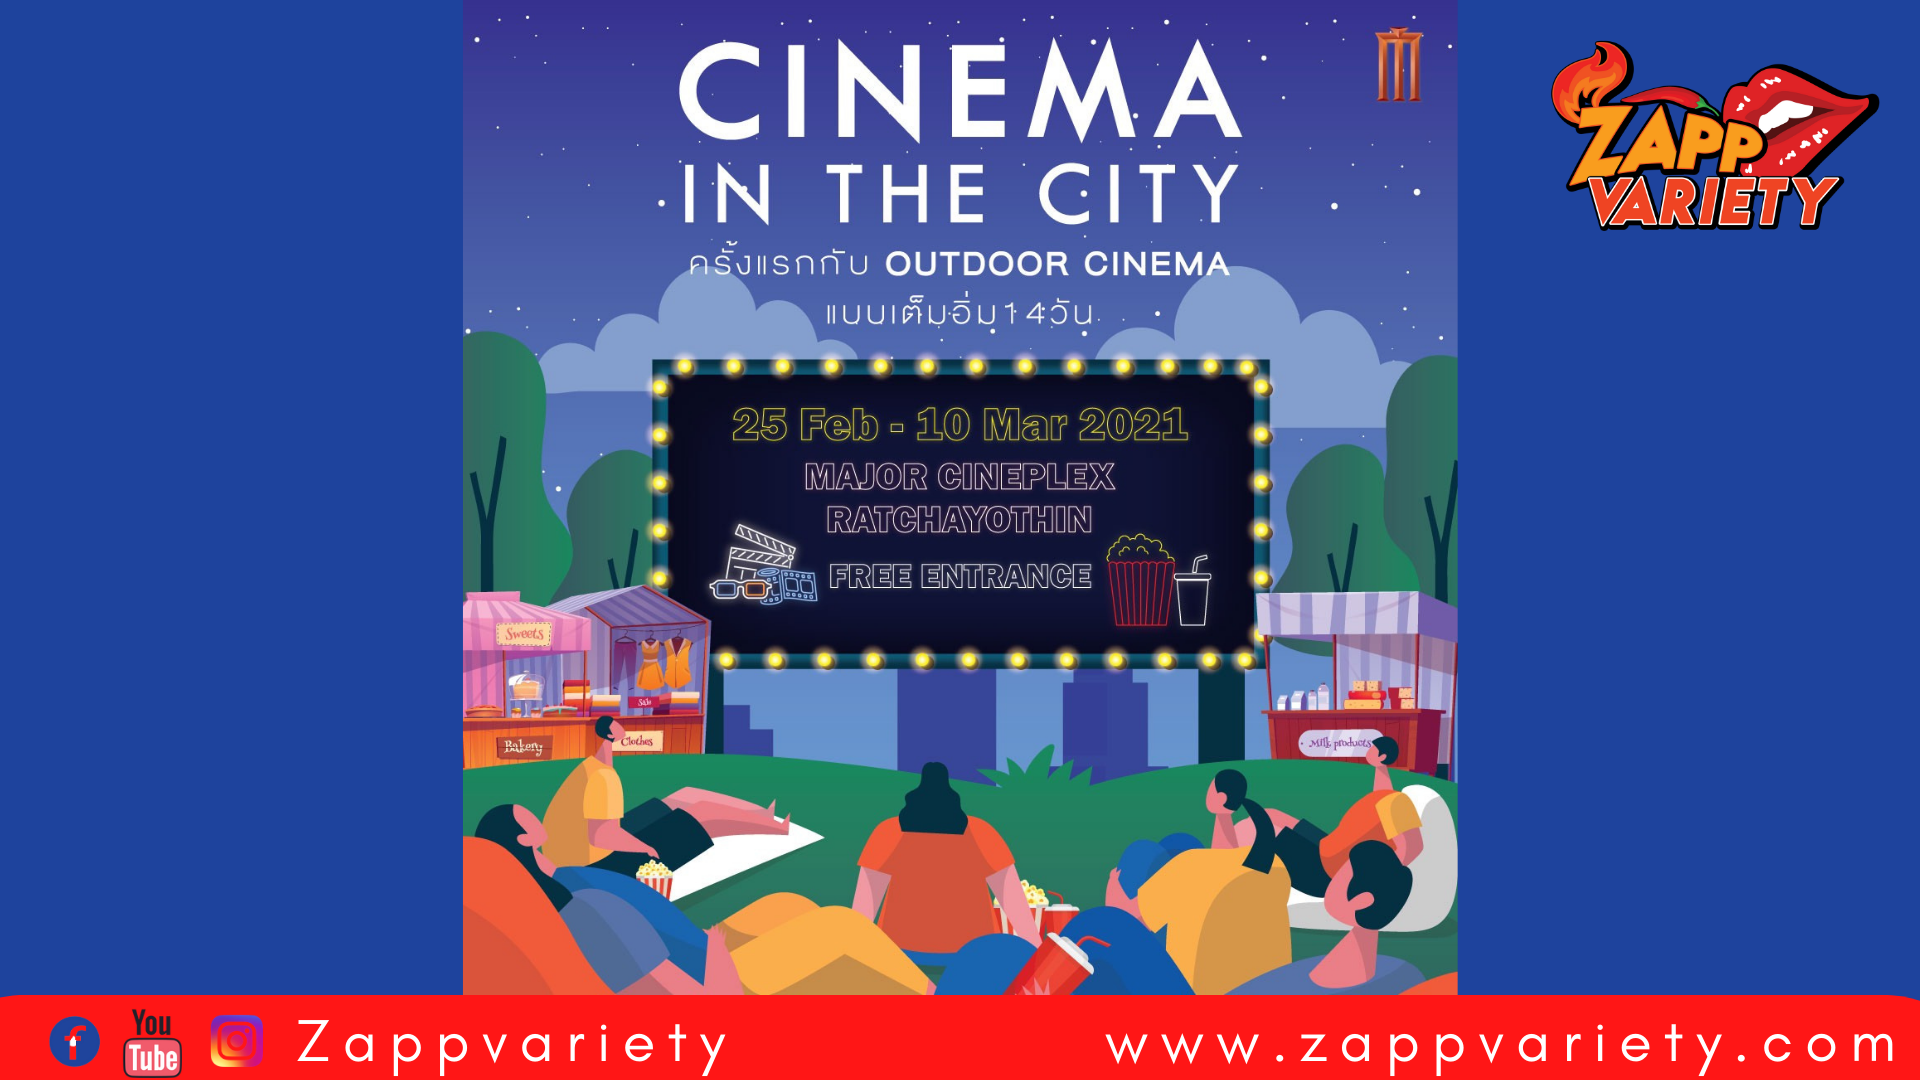 เมเจอร์ ซีนีเพล็กซ์ กรุ้ป เปิดประสบการณ์ความสนุกใหม่กับ “CINEMA IN THE CITY” ครั้งแรกในรูปแบบ Outdoor Cinema 